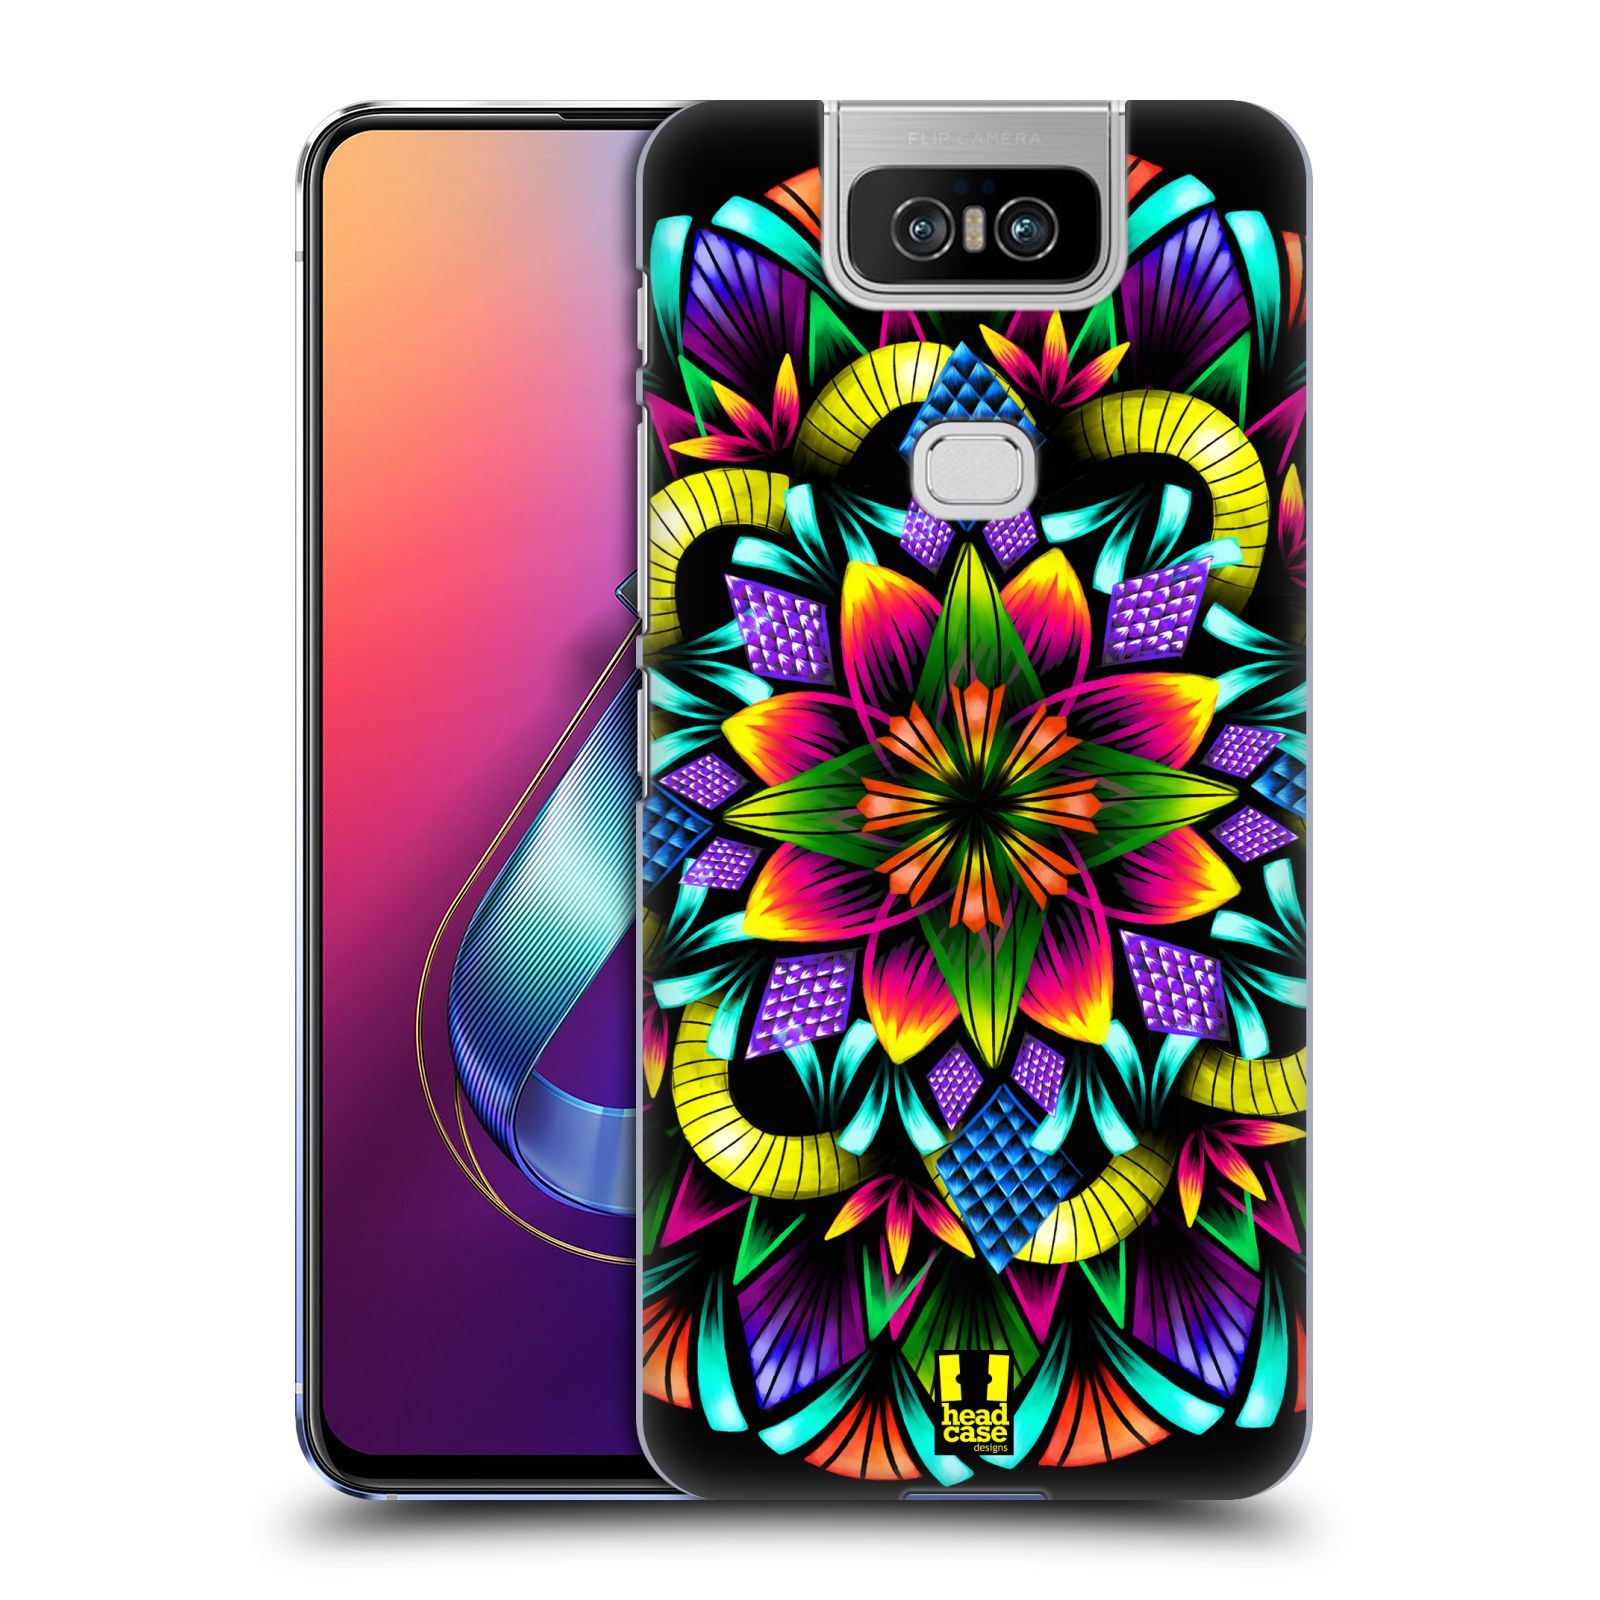 Pouzdro na mobil Asus Zenfone 6 ZS630KL - HEAD CASE - vzor Indie Mandala kaleidoskop barevný vzor KVĚTINA